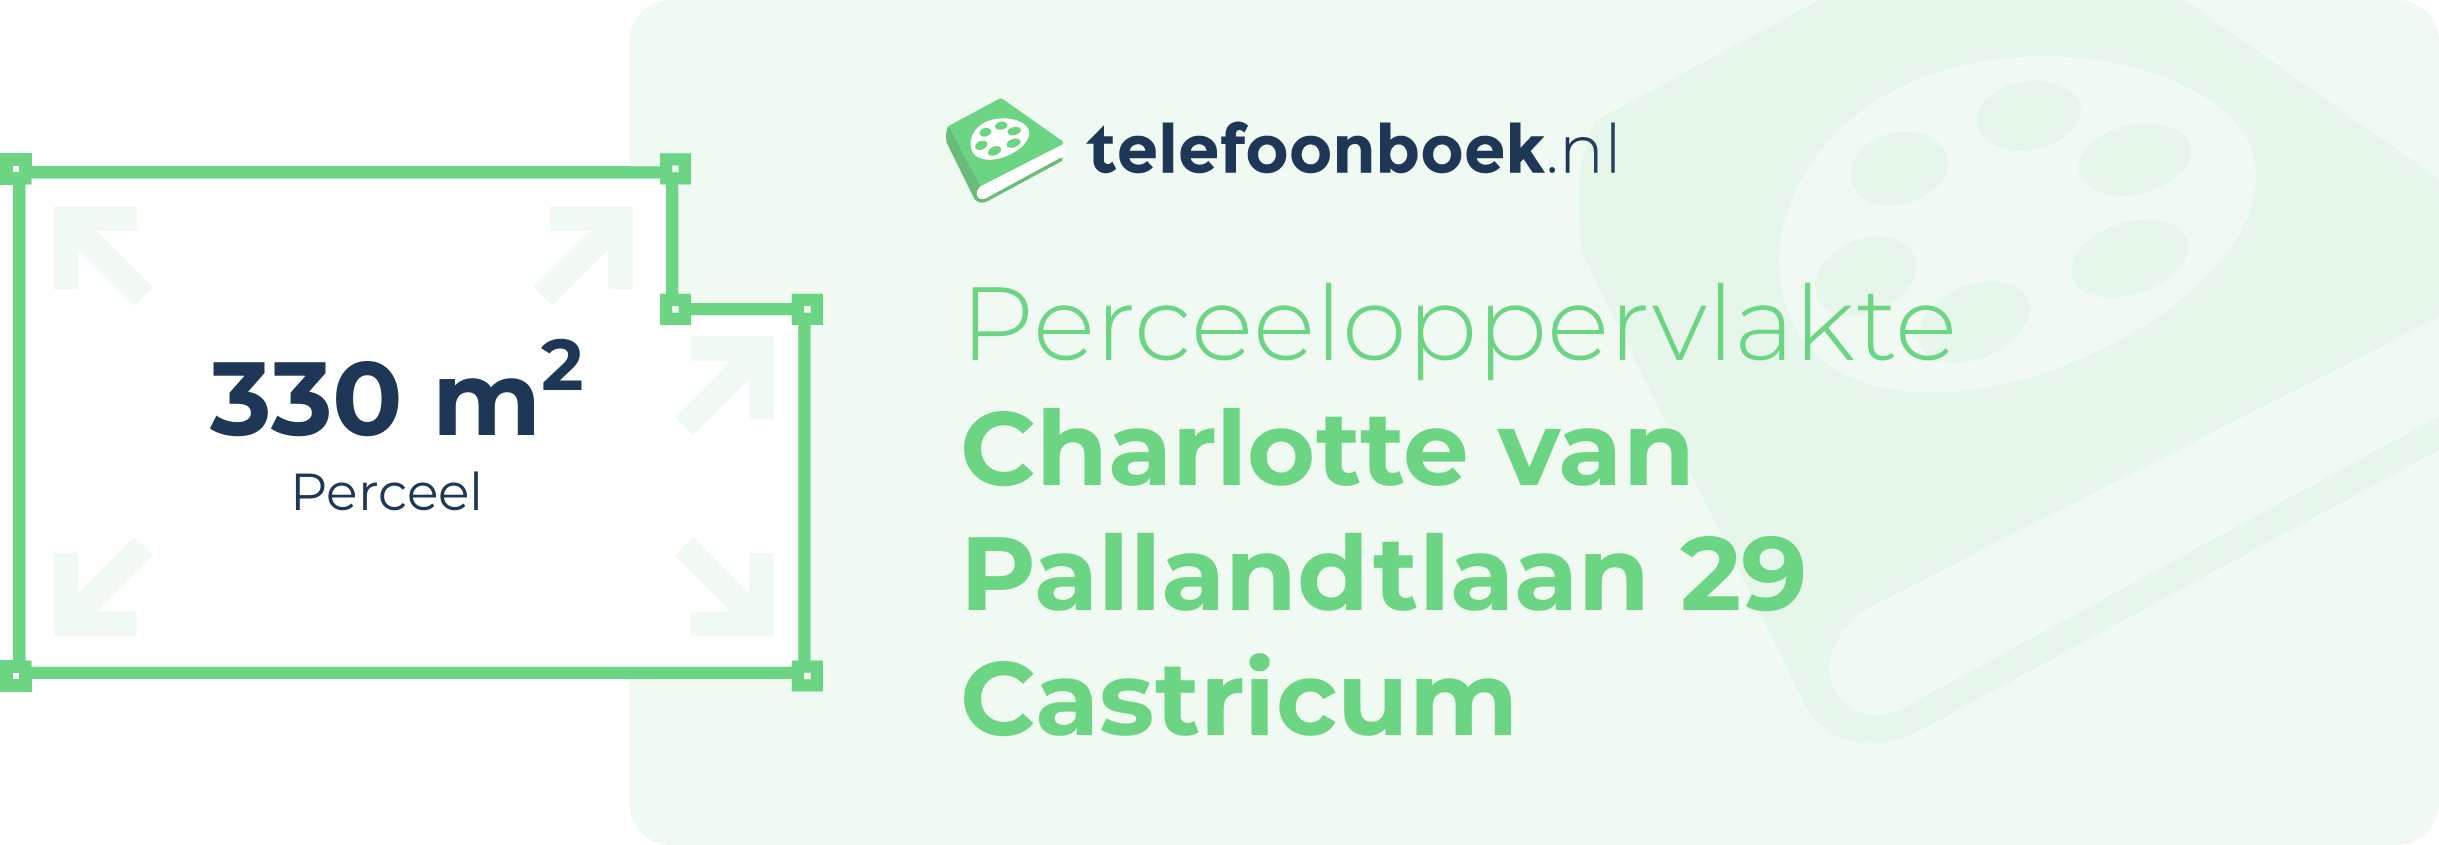 Perceeloppervlakte Charlotte Van Pallandtlaan 29 Castricum